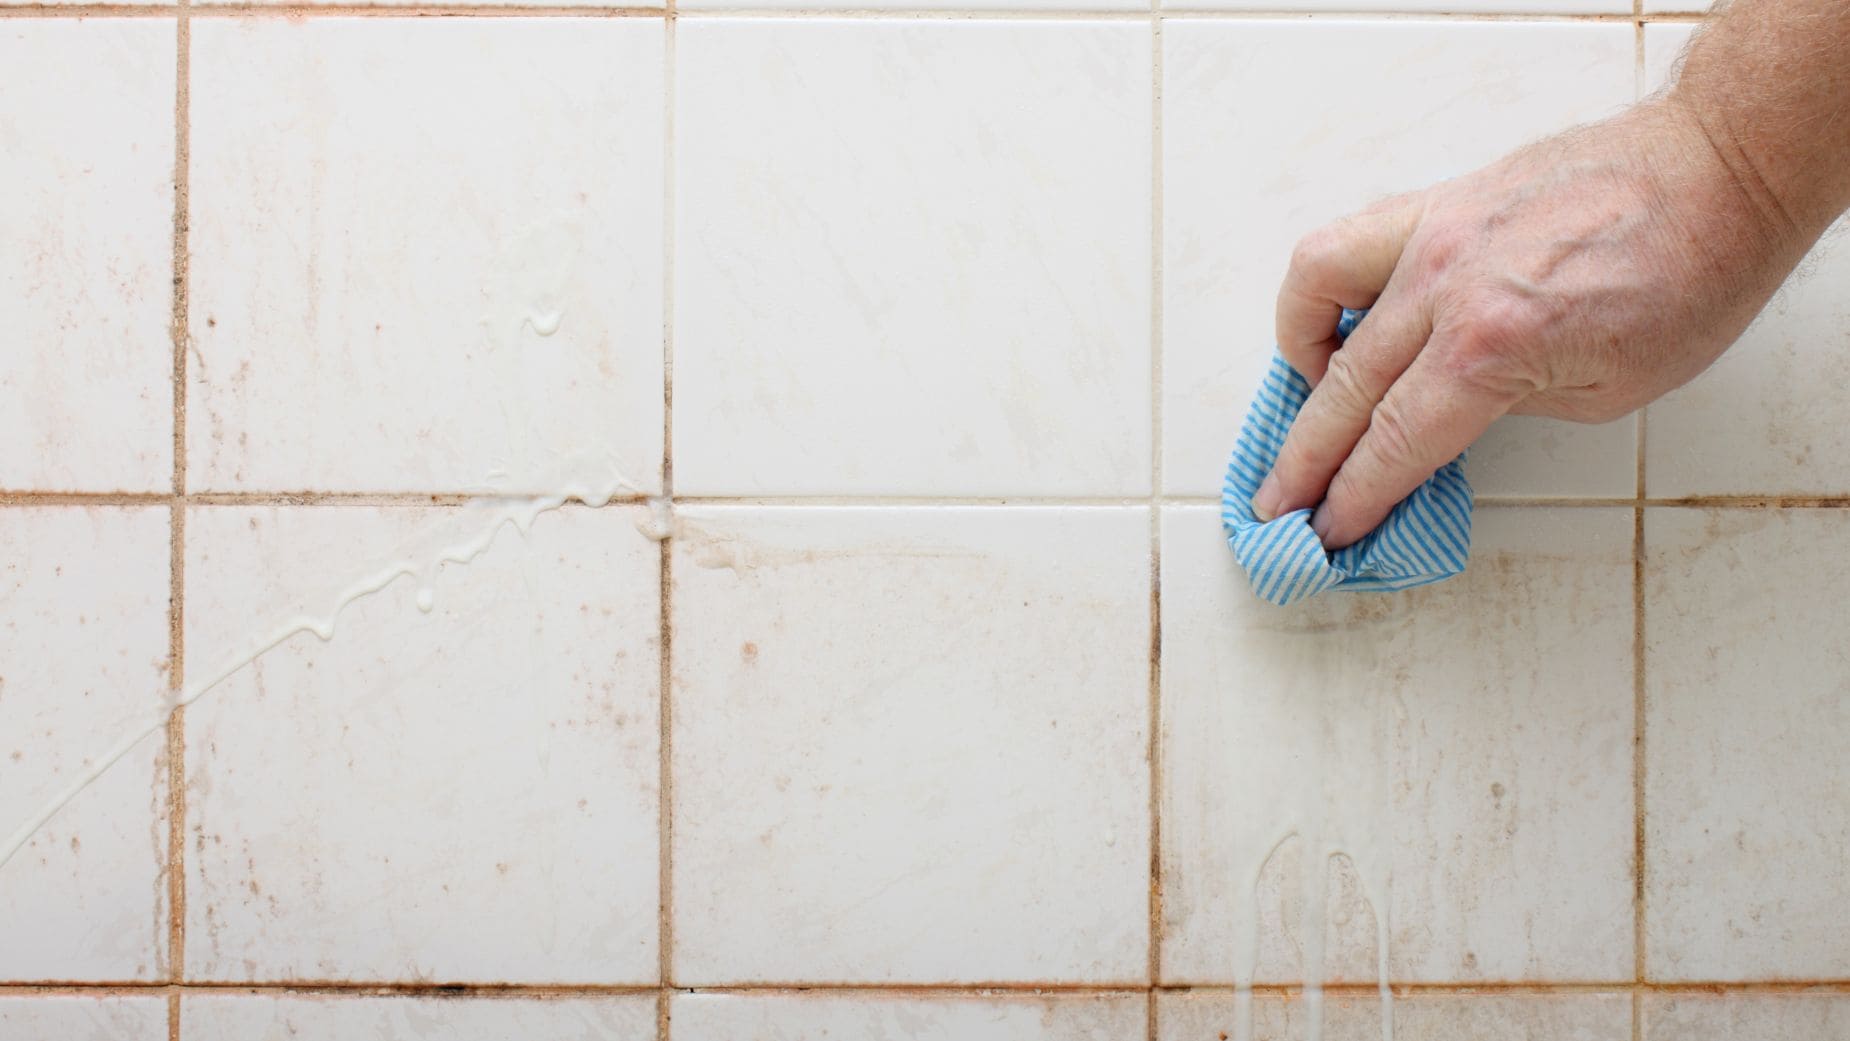 La limpieza de las juntas de los azulejos es fundamental para que no se acumule suciedad